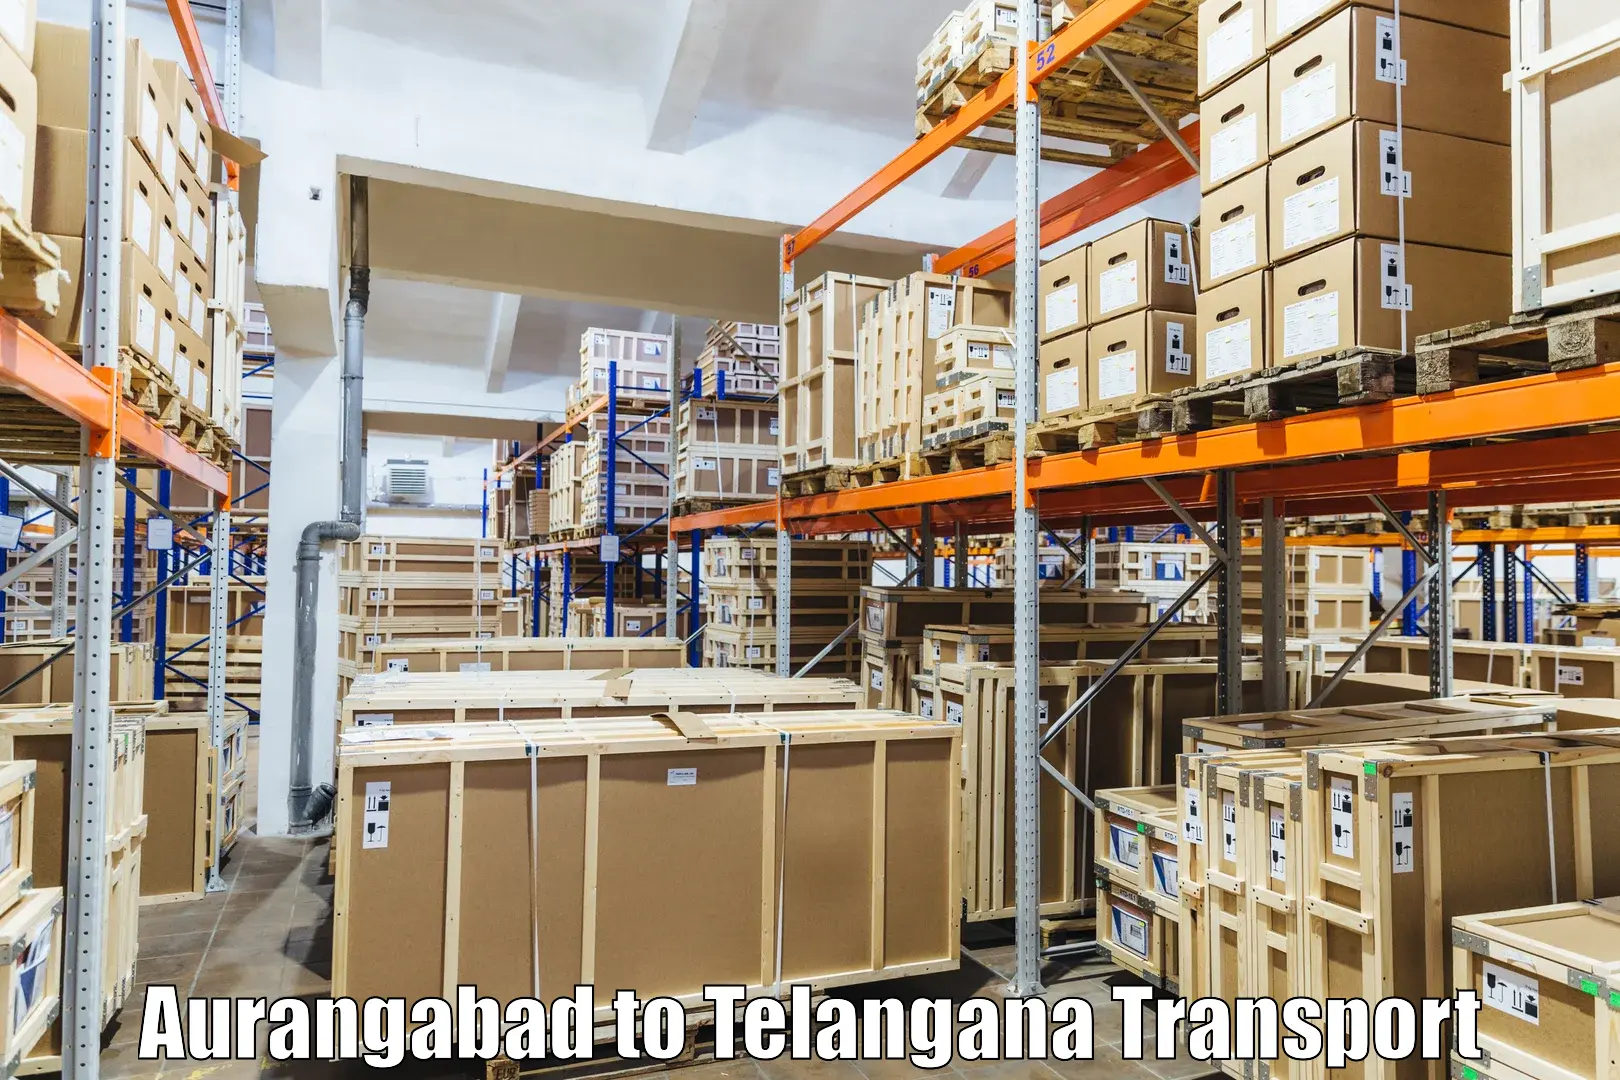 Cargo transport services Aurangabad to Thirumalagiri